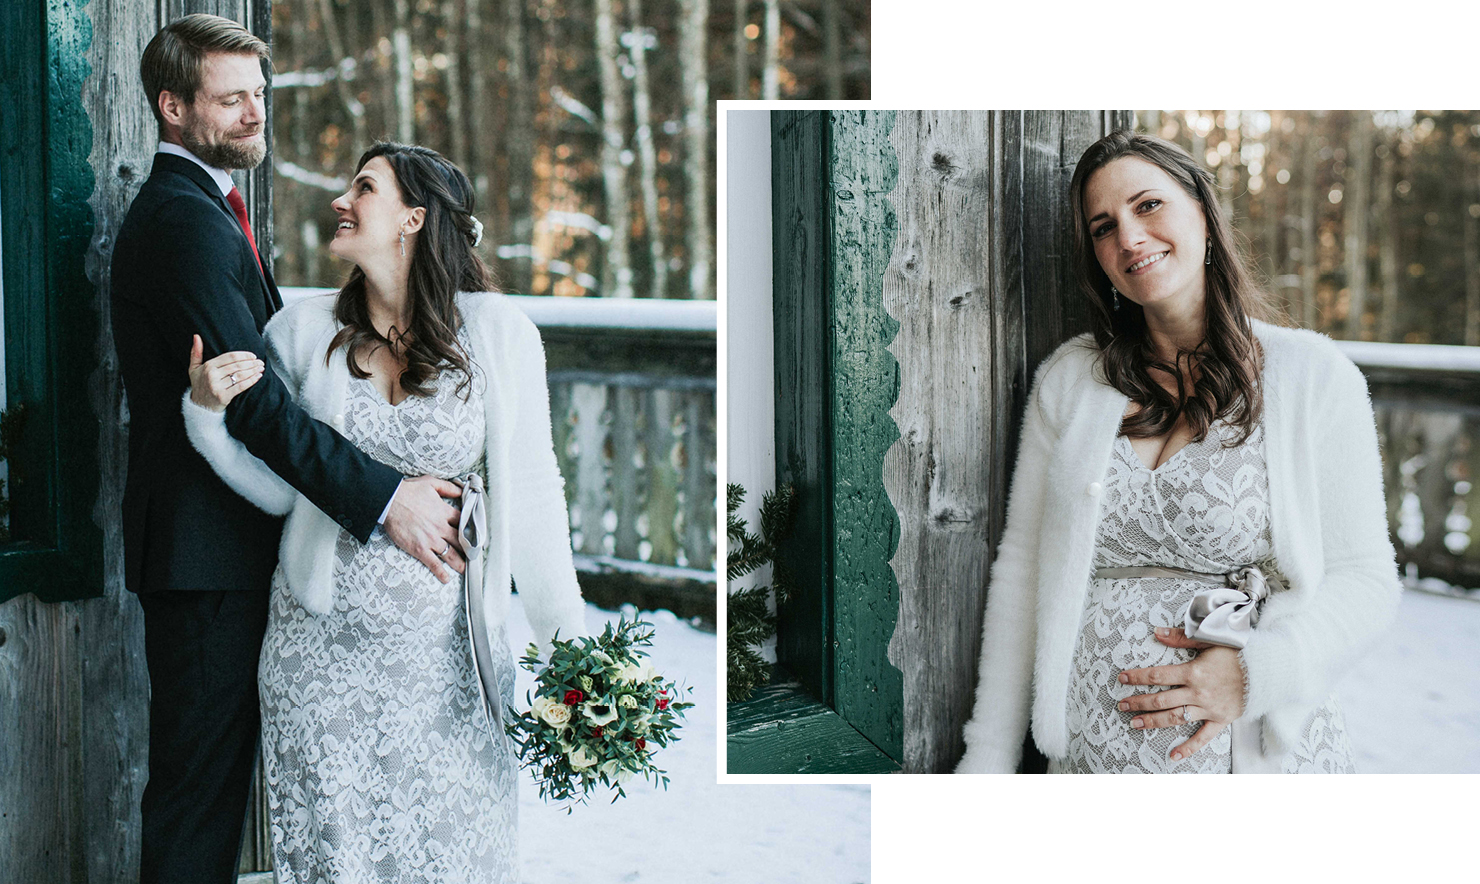 Katharina zeigt ihr Umstandsbrautkleid und ihre Hochzeit mit Babybauch